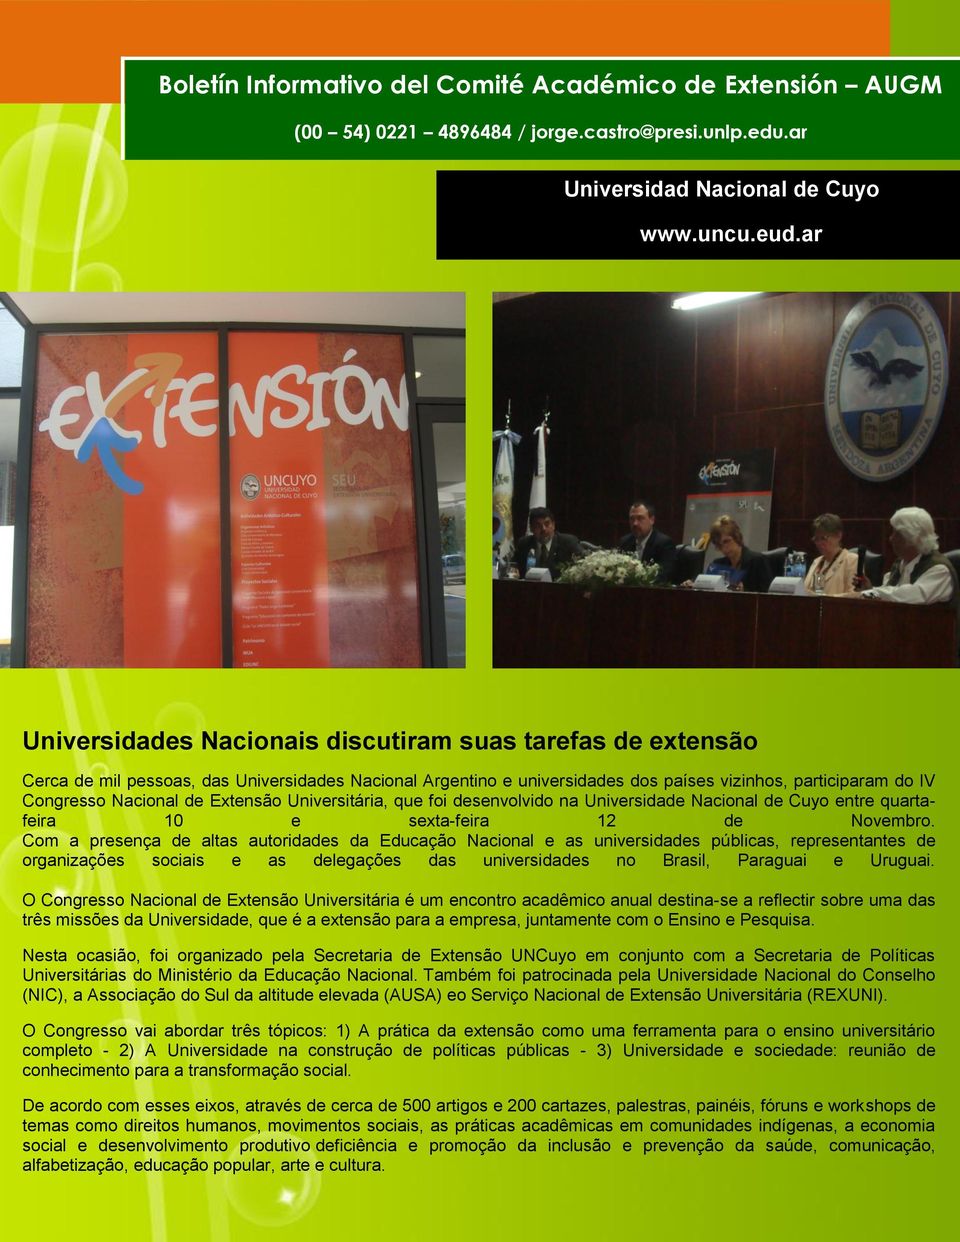 Extensão Universitária, que foi desenvolvido na Universidade Nacional de Cuyo entre quartafeira 10 e sexta-feira 12 de Novembro.